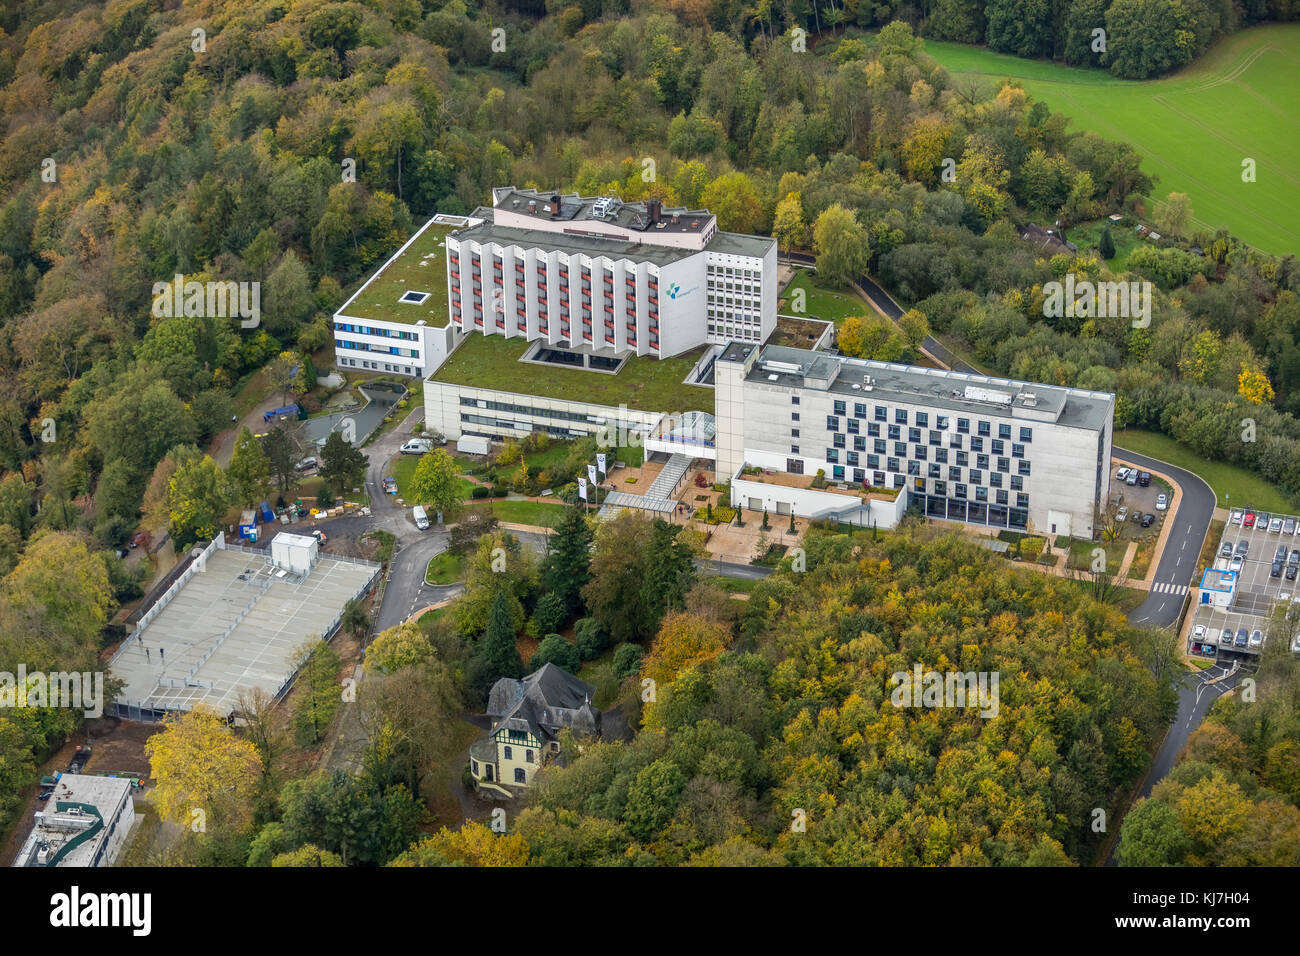 Ruhrland klinik en Heidhausen, pertenece al Hospital Universitario de Essen, asignado a la Universidad de Duisburg-Essen, Essen, Ruhr Area, Renania del Norte-W. Foto de stock